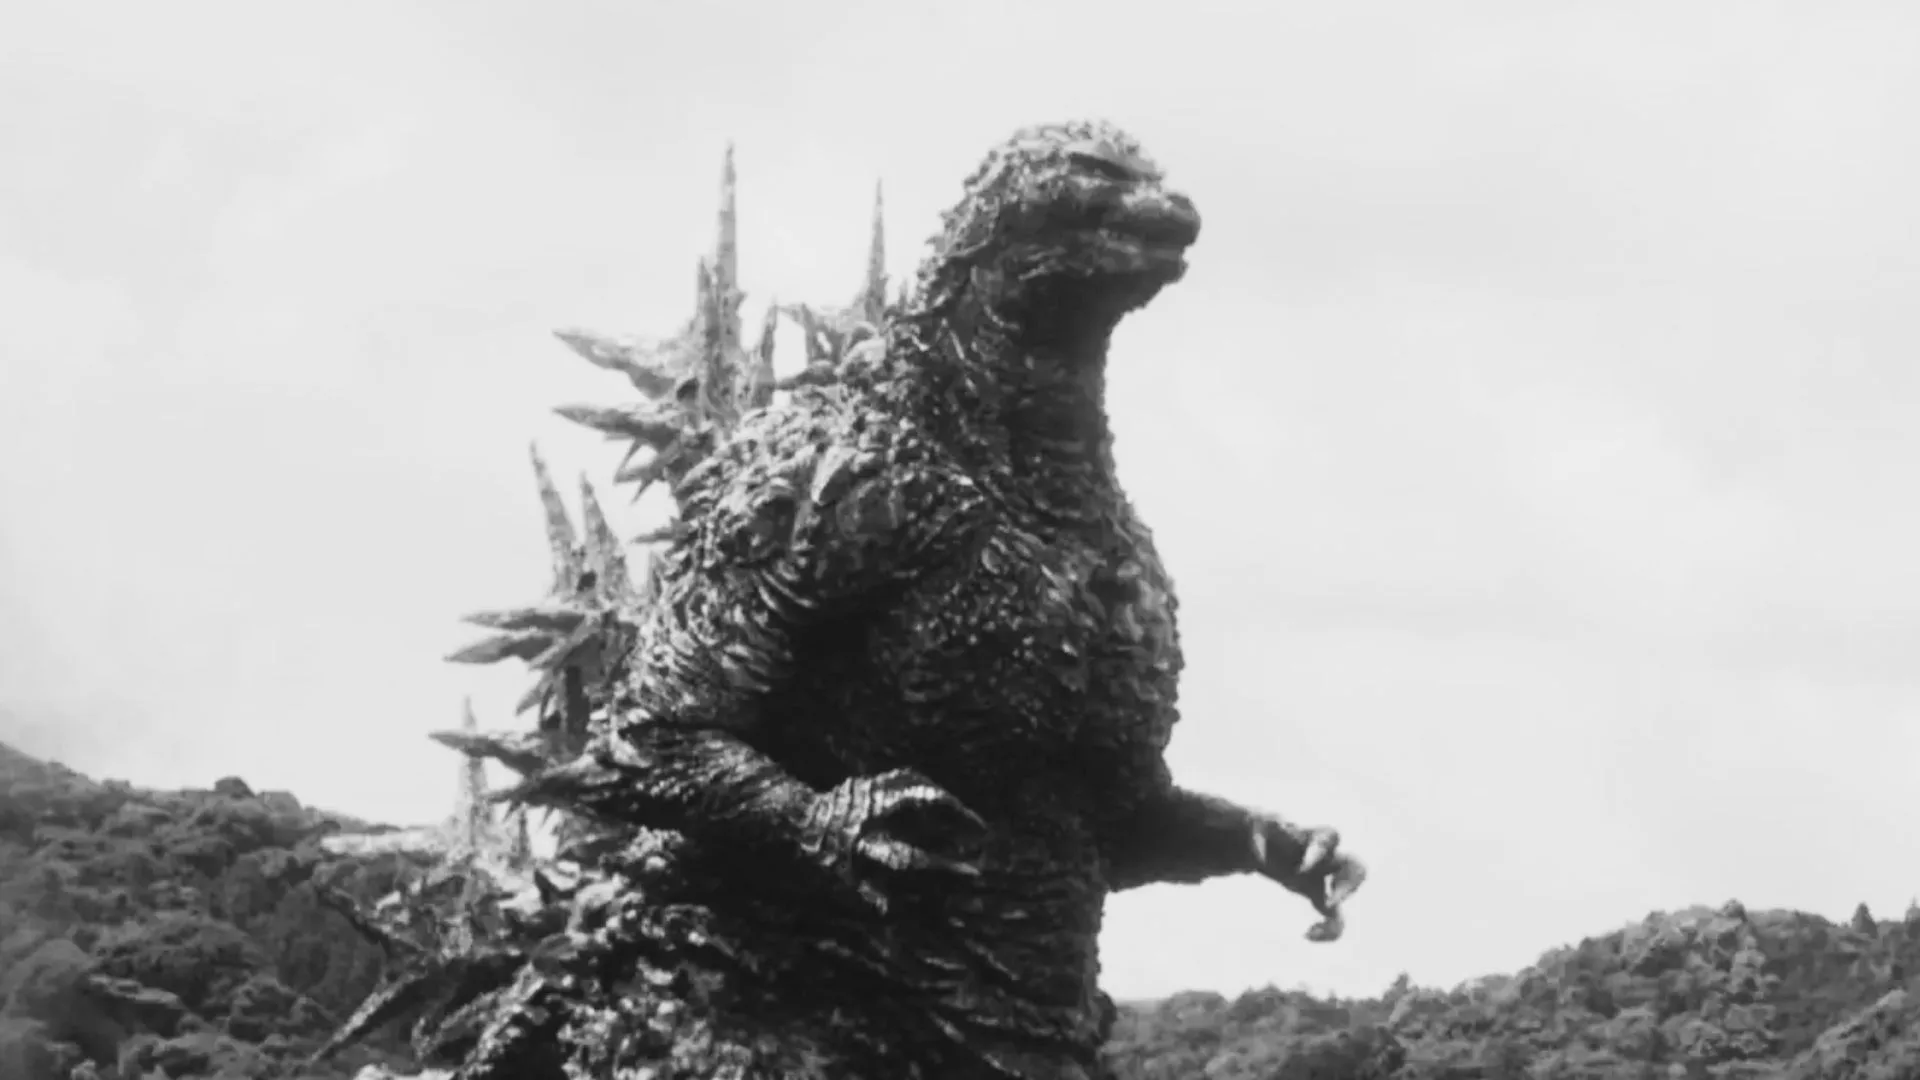 Esperan que con esta versión en blanco y negro de Godzilla Minus One el público experimente una nueva realidad en la pantalla grande.